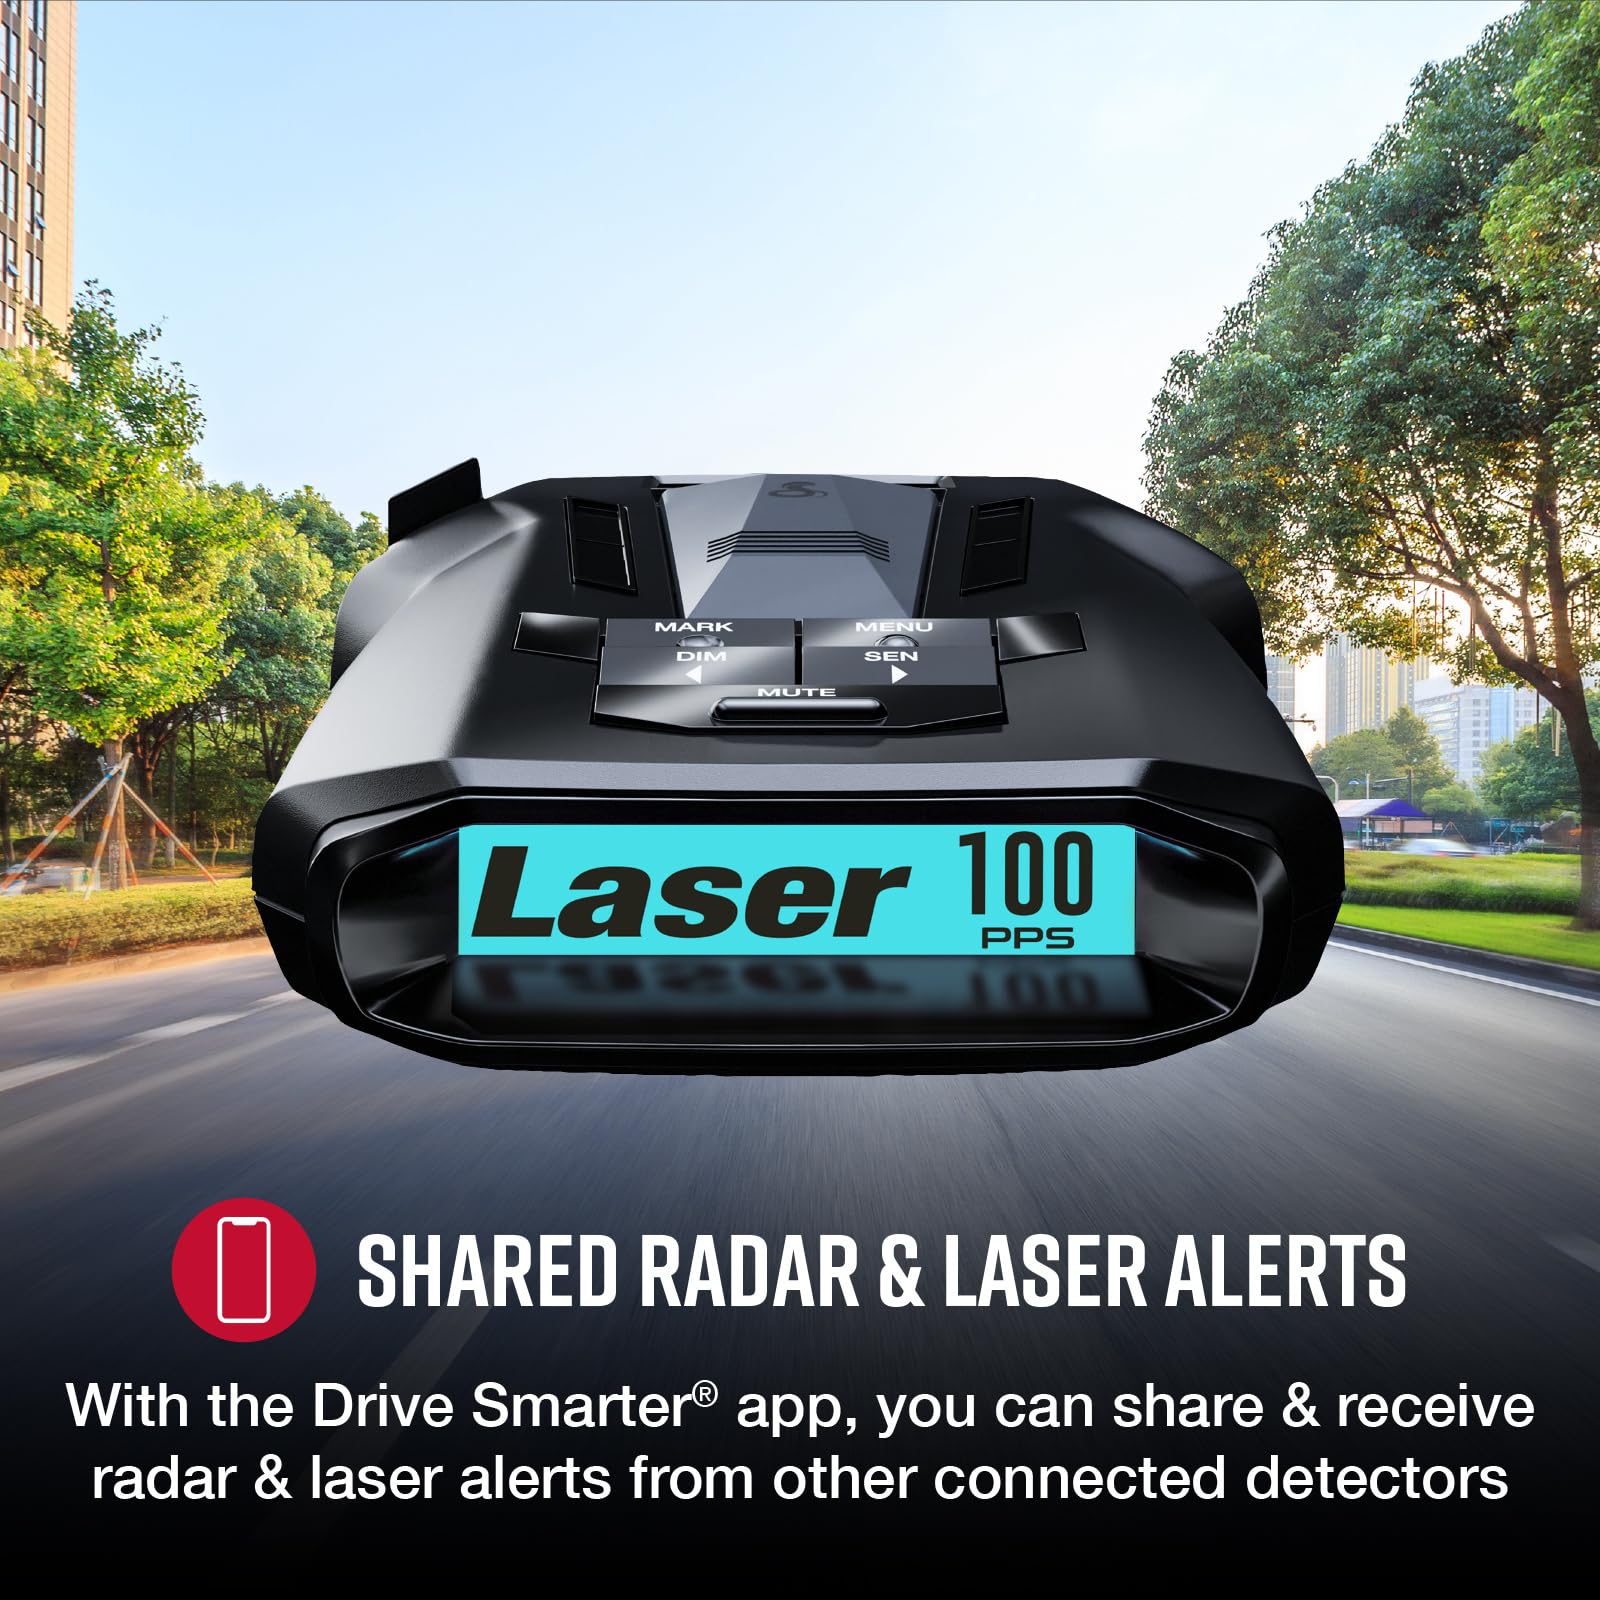 Cobra RAD 700i Laser Radar Detector: Long Detection Range, AutoLearn Intelligence and Advanced Filtering Software for Less False Alerts, Drive Smarter App, Laser Eye Front and Rear Detection, Black